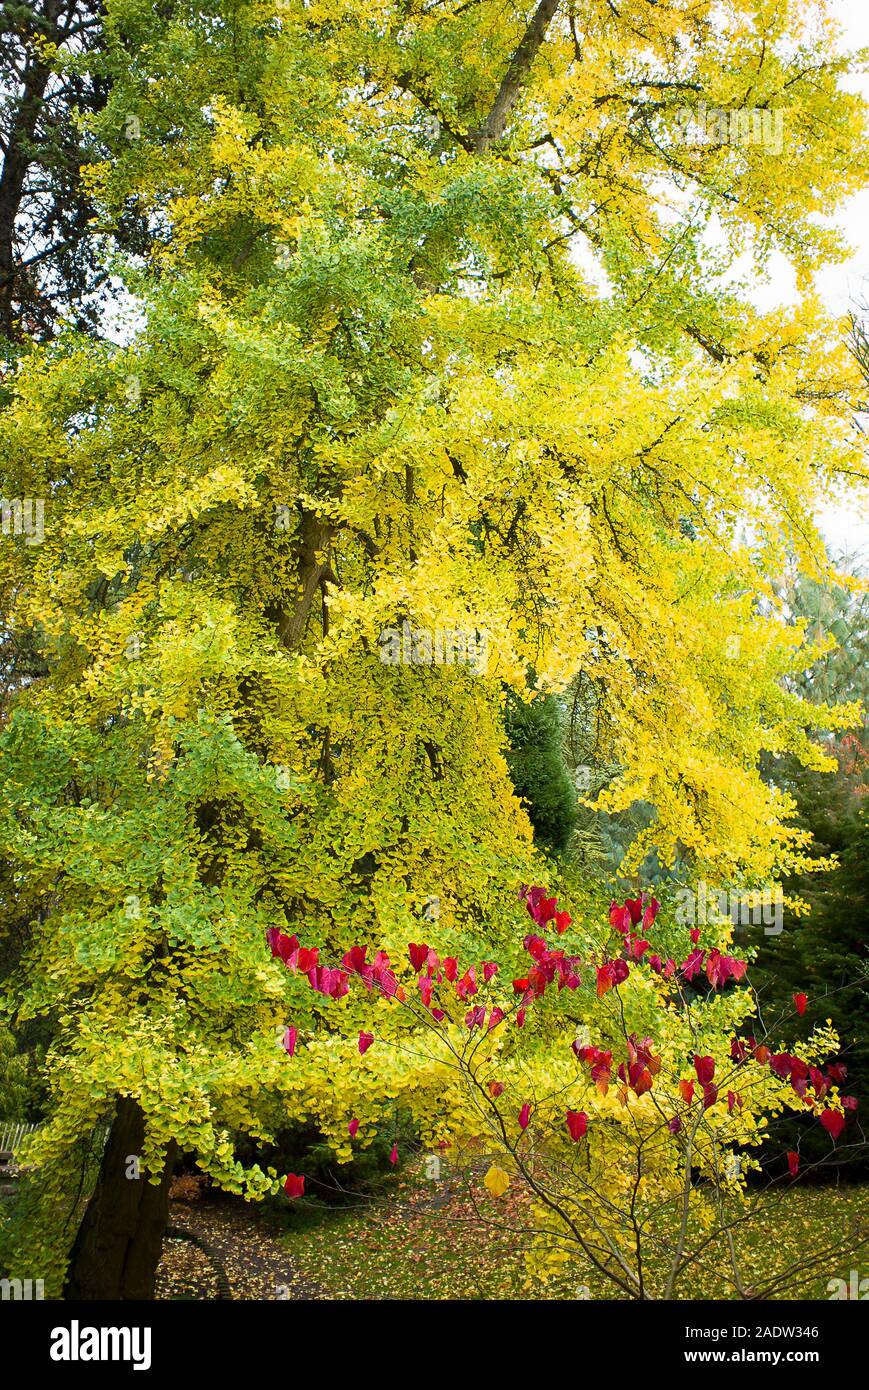 Un árbol de ginkgo maduro en un jardín inglés que muestra la transición del verde al amarillo de hojas en otoño Foto de stock